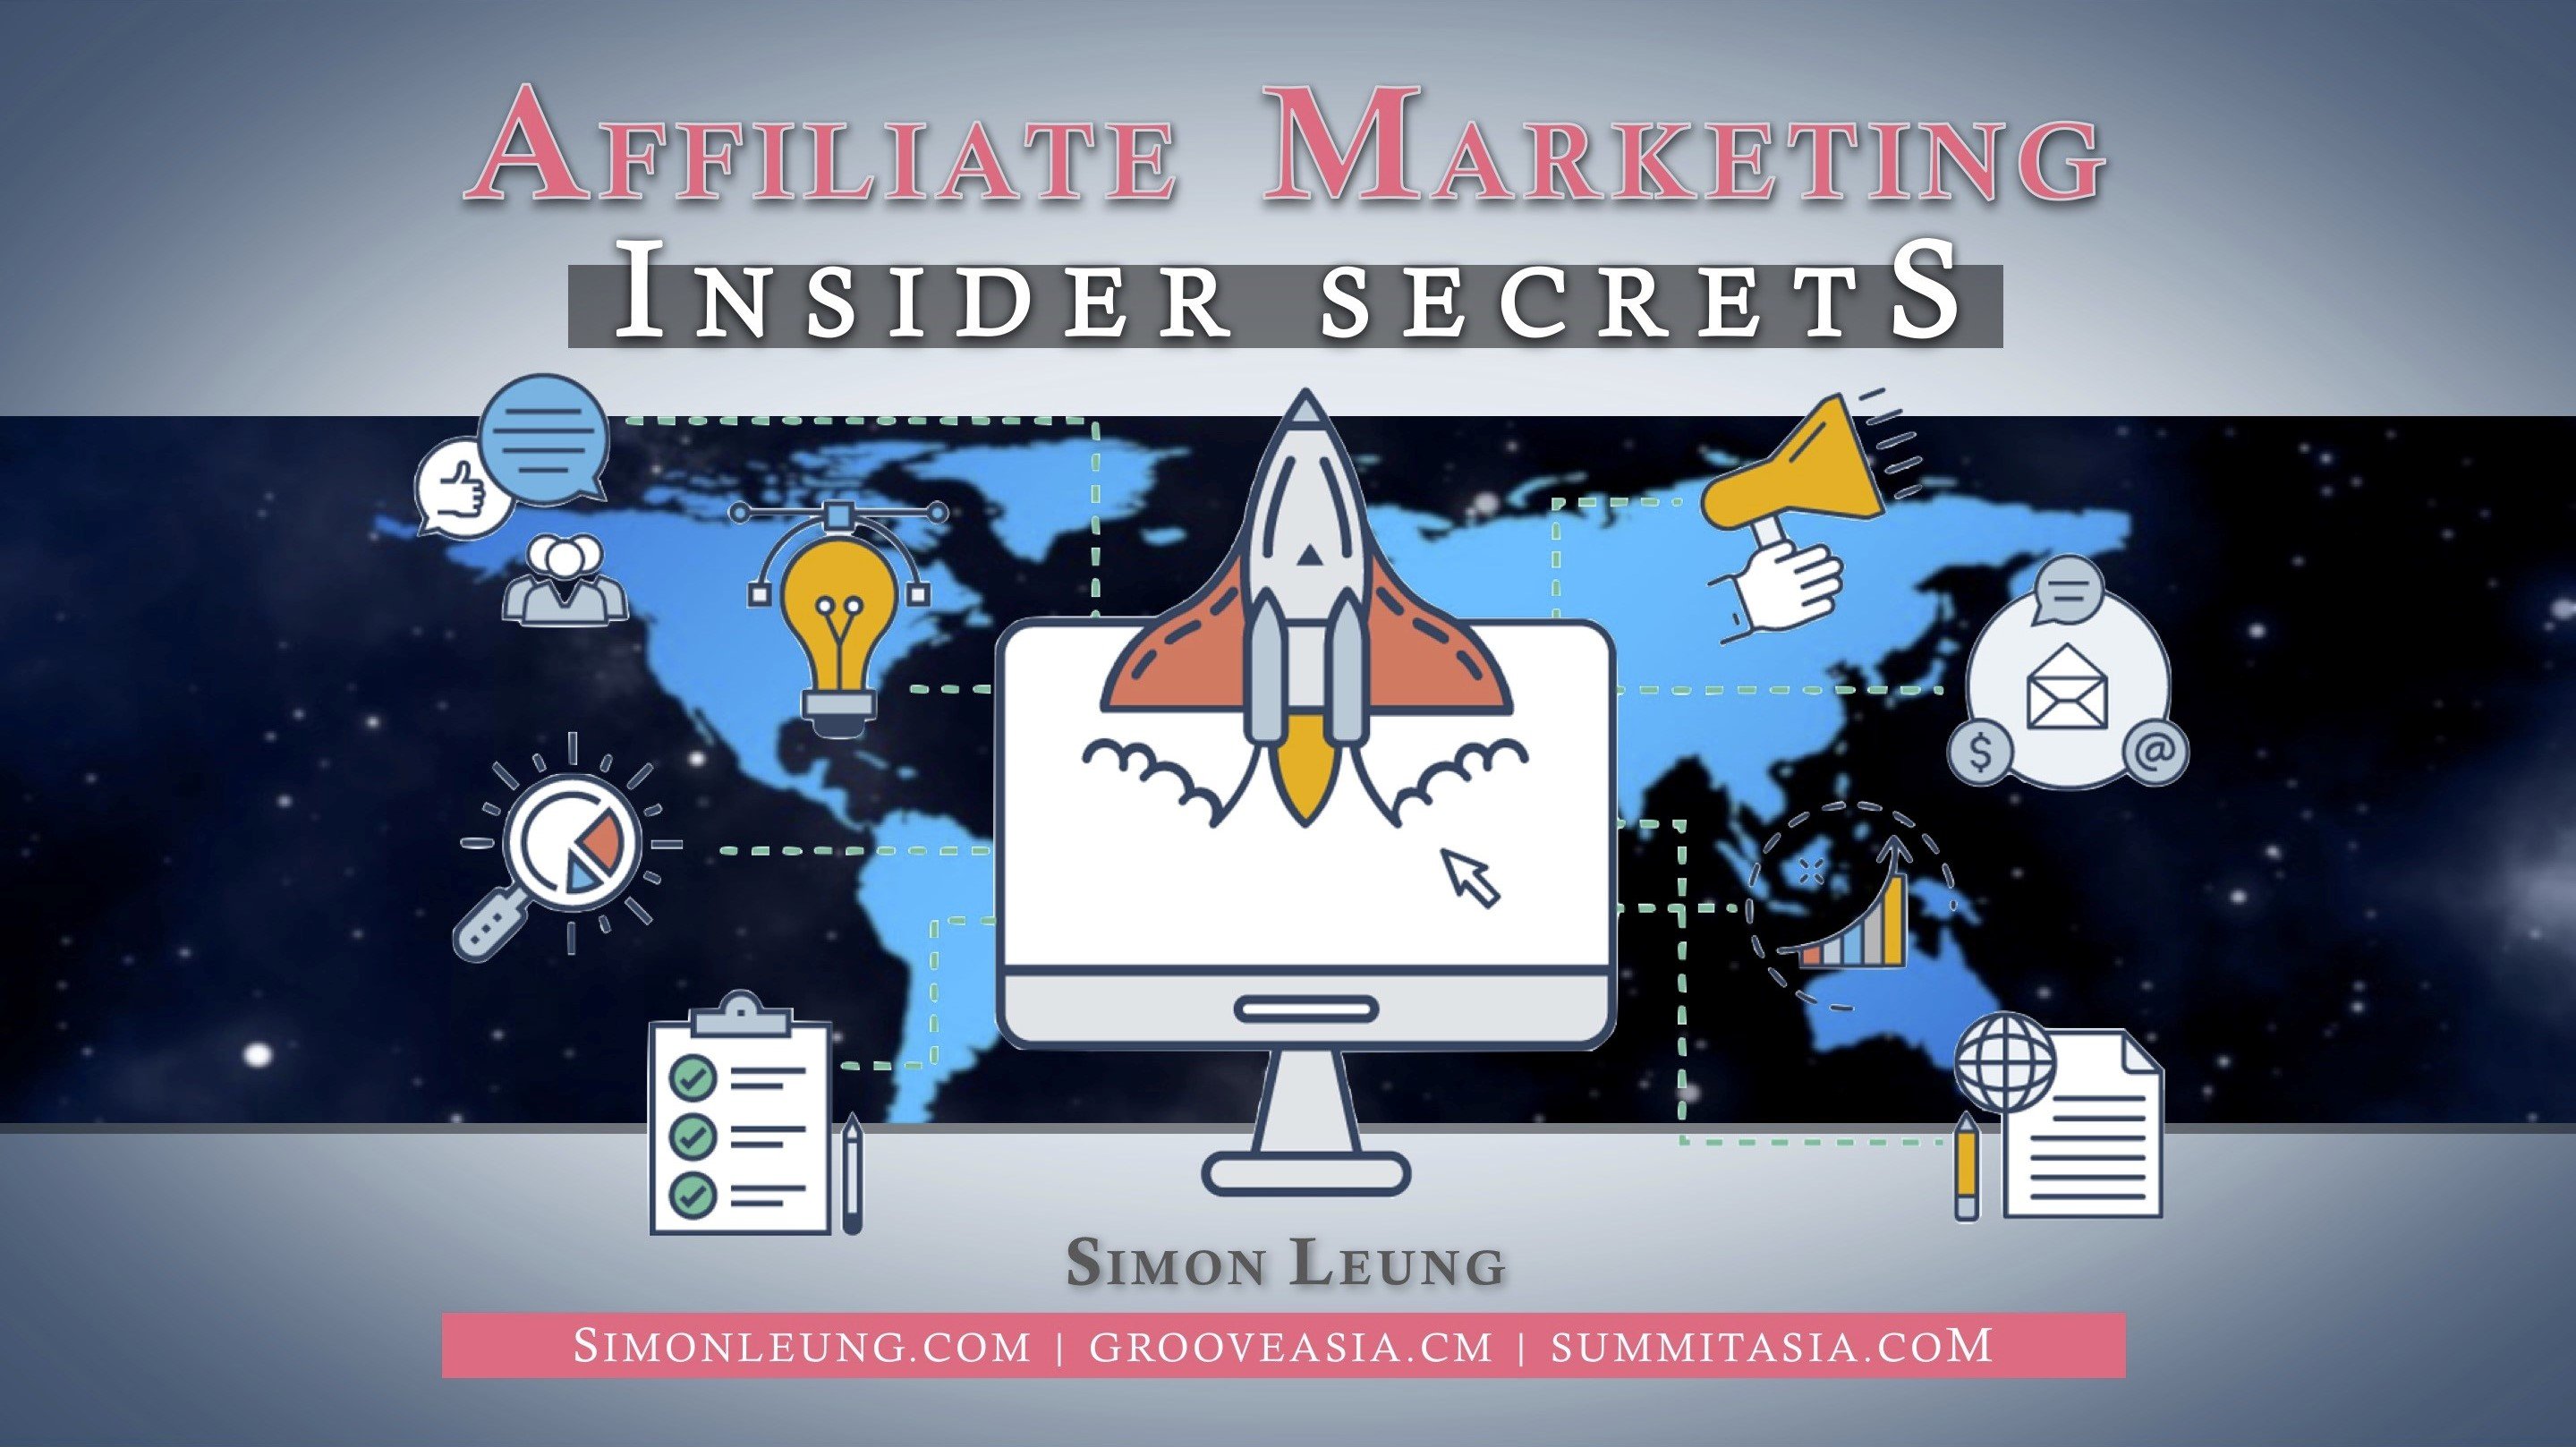 simon leung affiliate marketing insider secrets amis groovesummit grooveasia summit